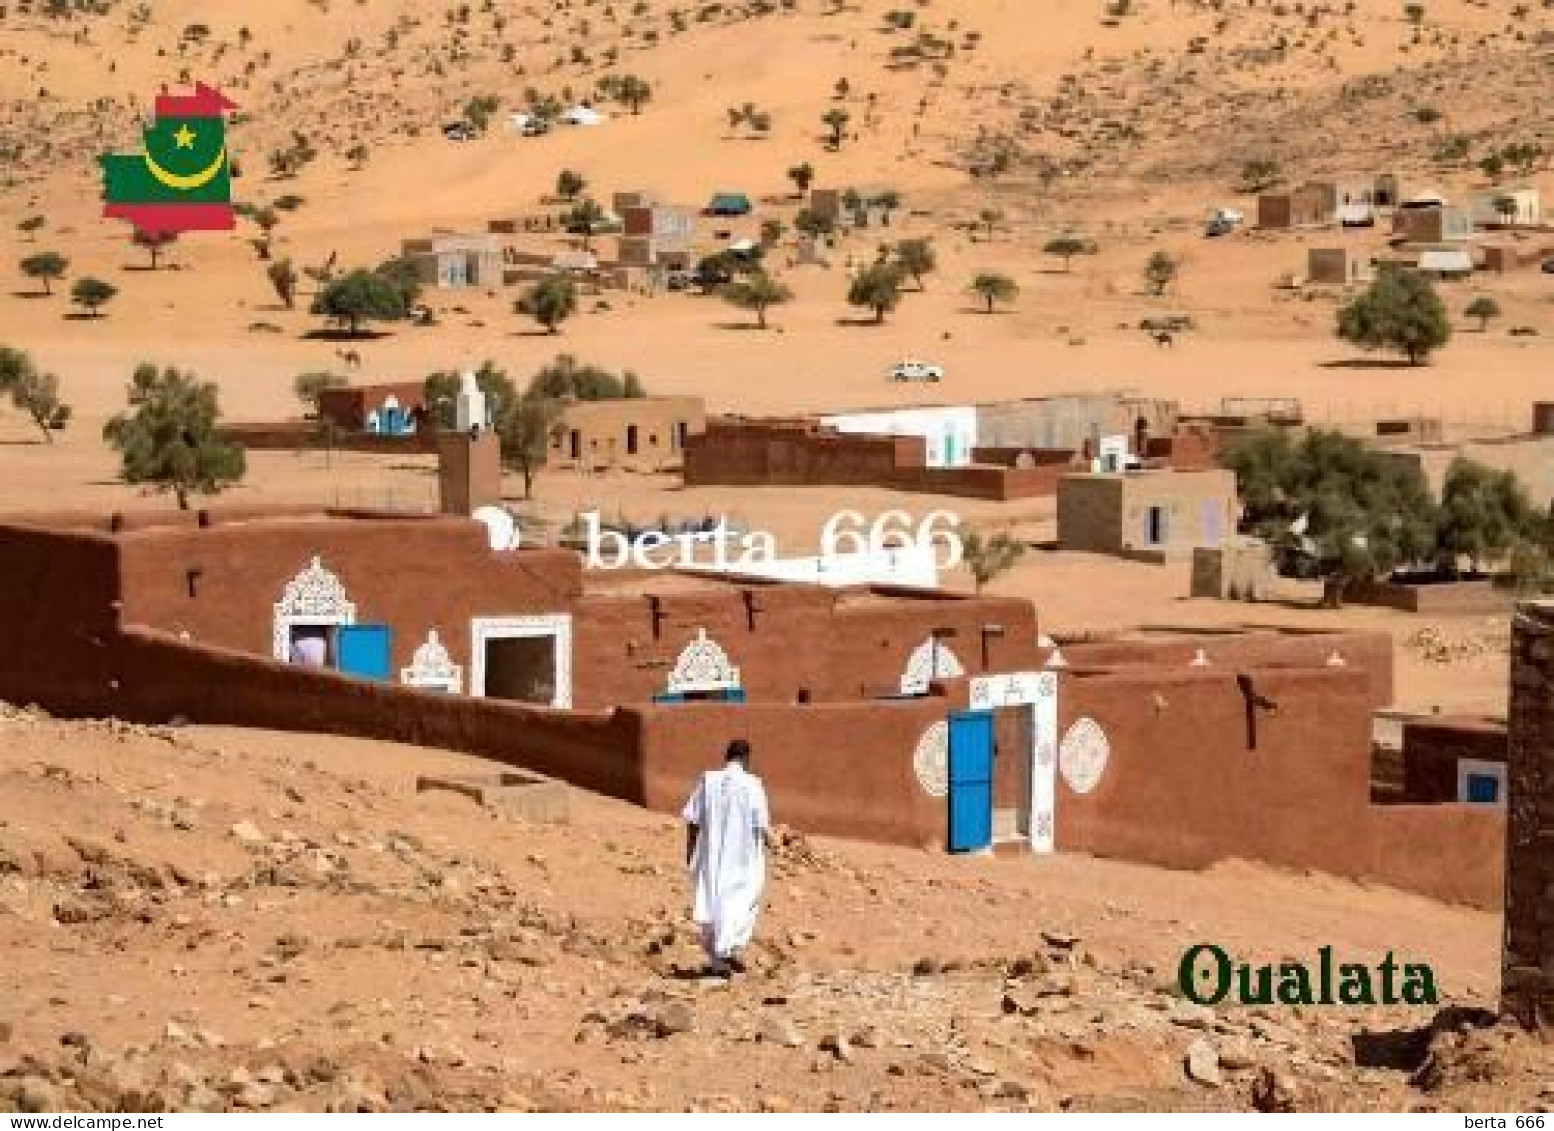 Mauritania Oualata UNESCO New Postcard - Mauritania